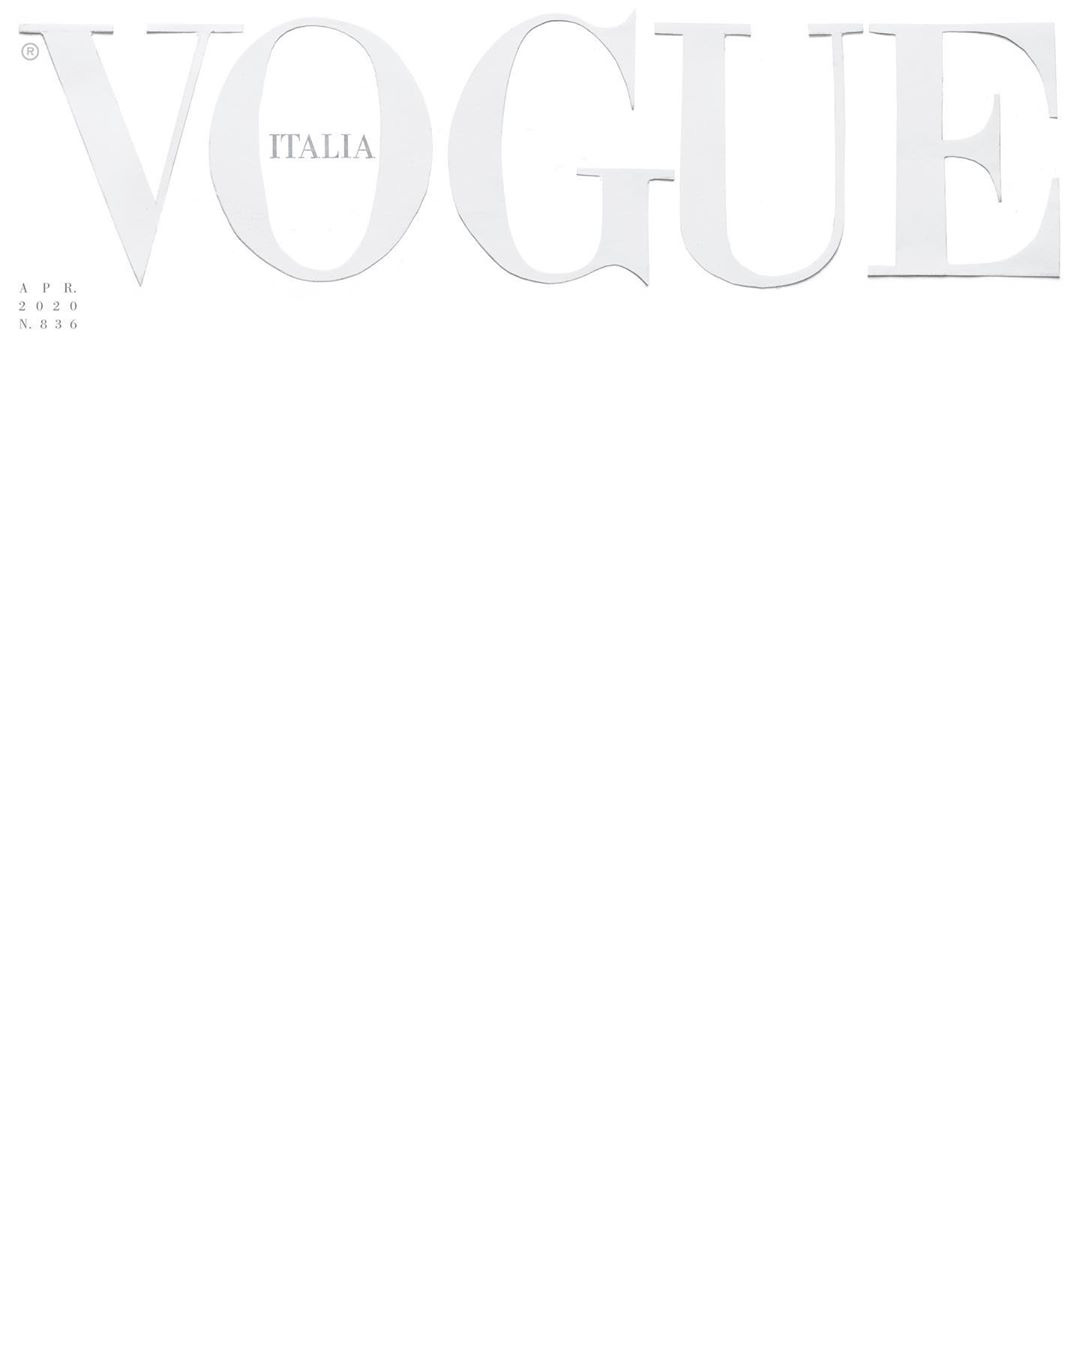 Tạp chí Vogue Ý vẫn luôn là một tấm gương lấy cảm hứng cho các nhà thời trang trên khắp thế giới. Nhật ký thời trang duy nhất của bạn, với những hình ảnh, bài viết và câu chuyện bên trong tạp chí.